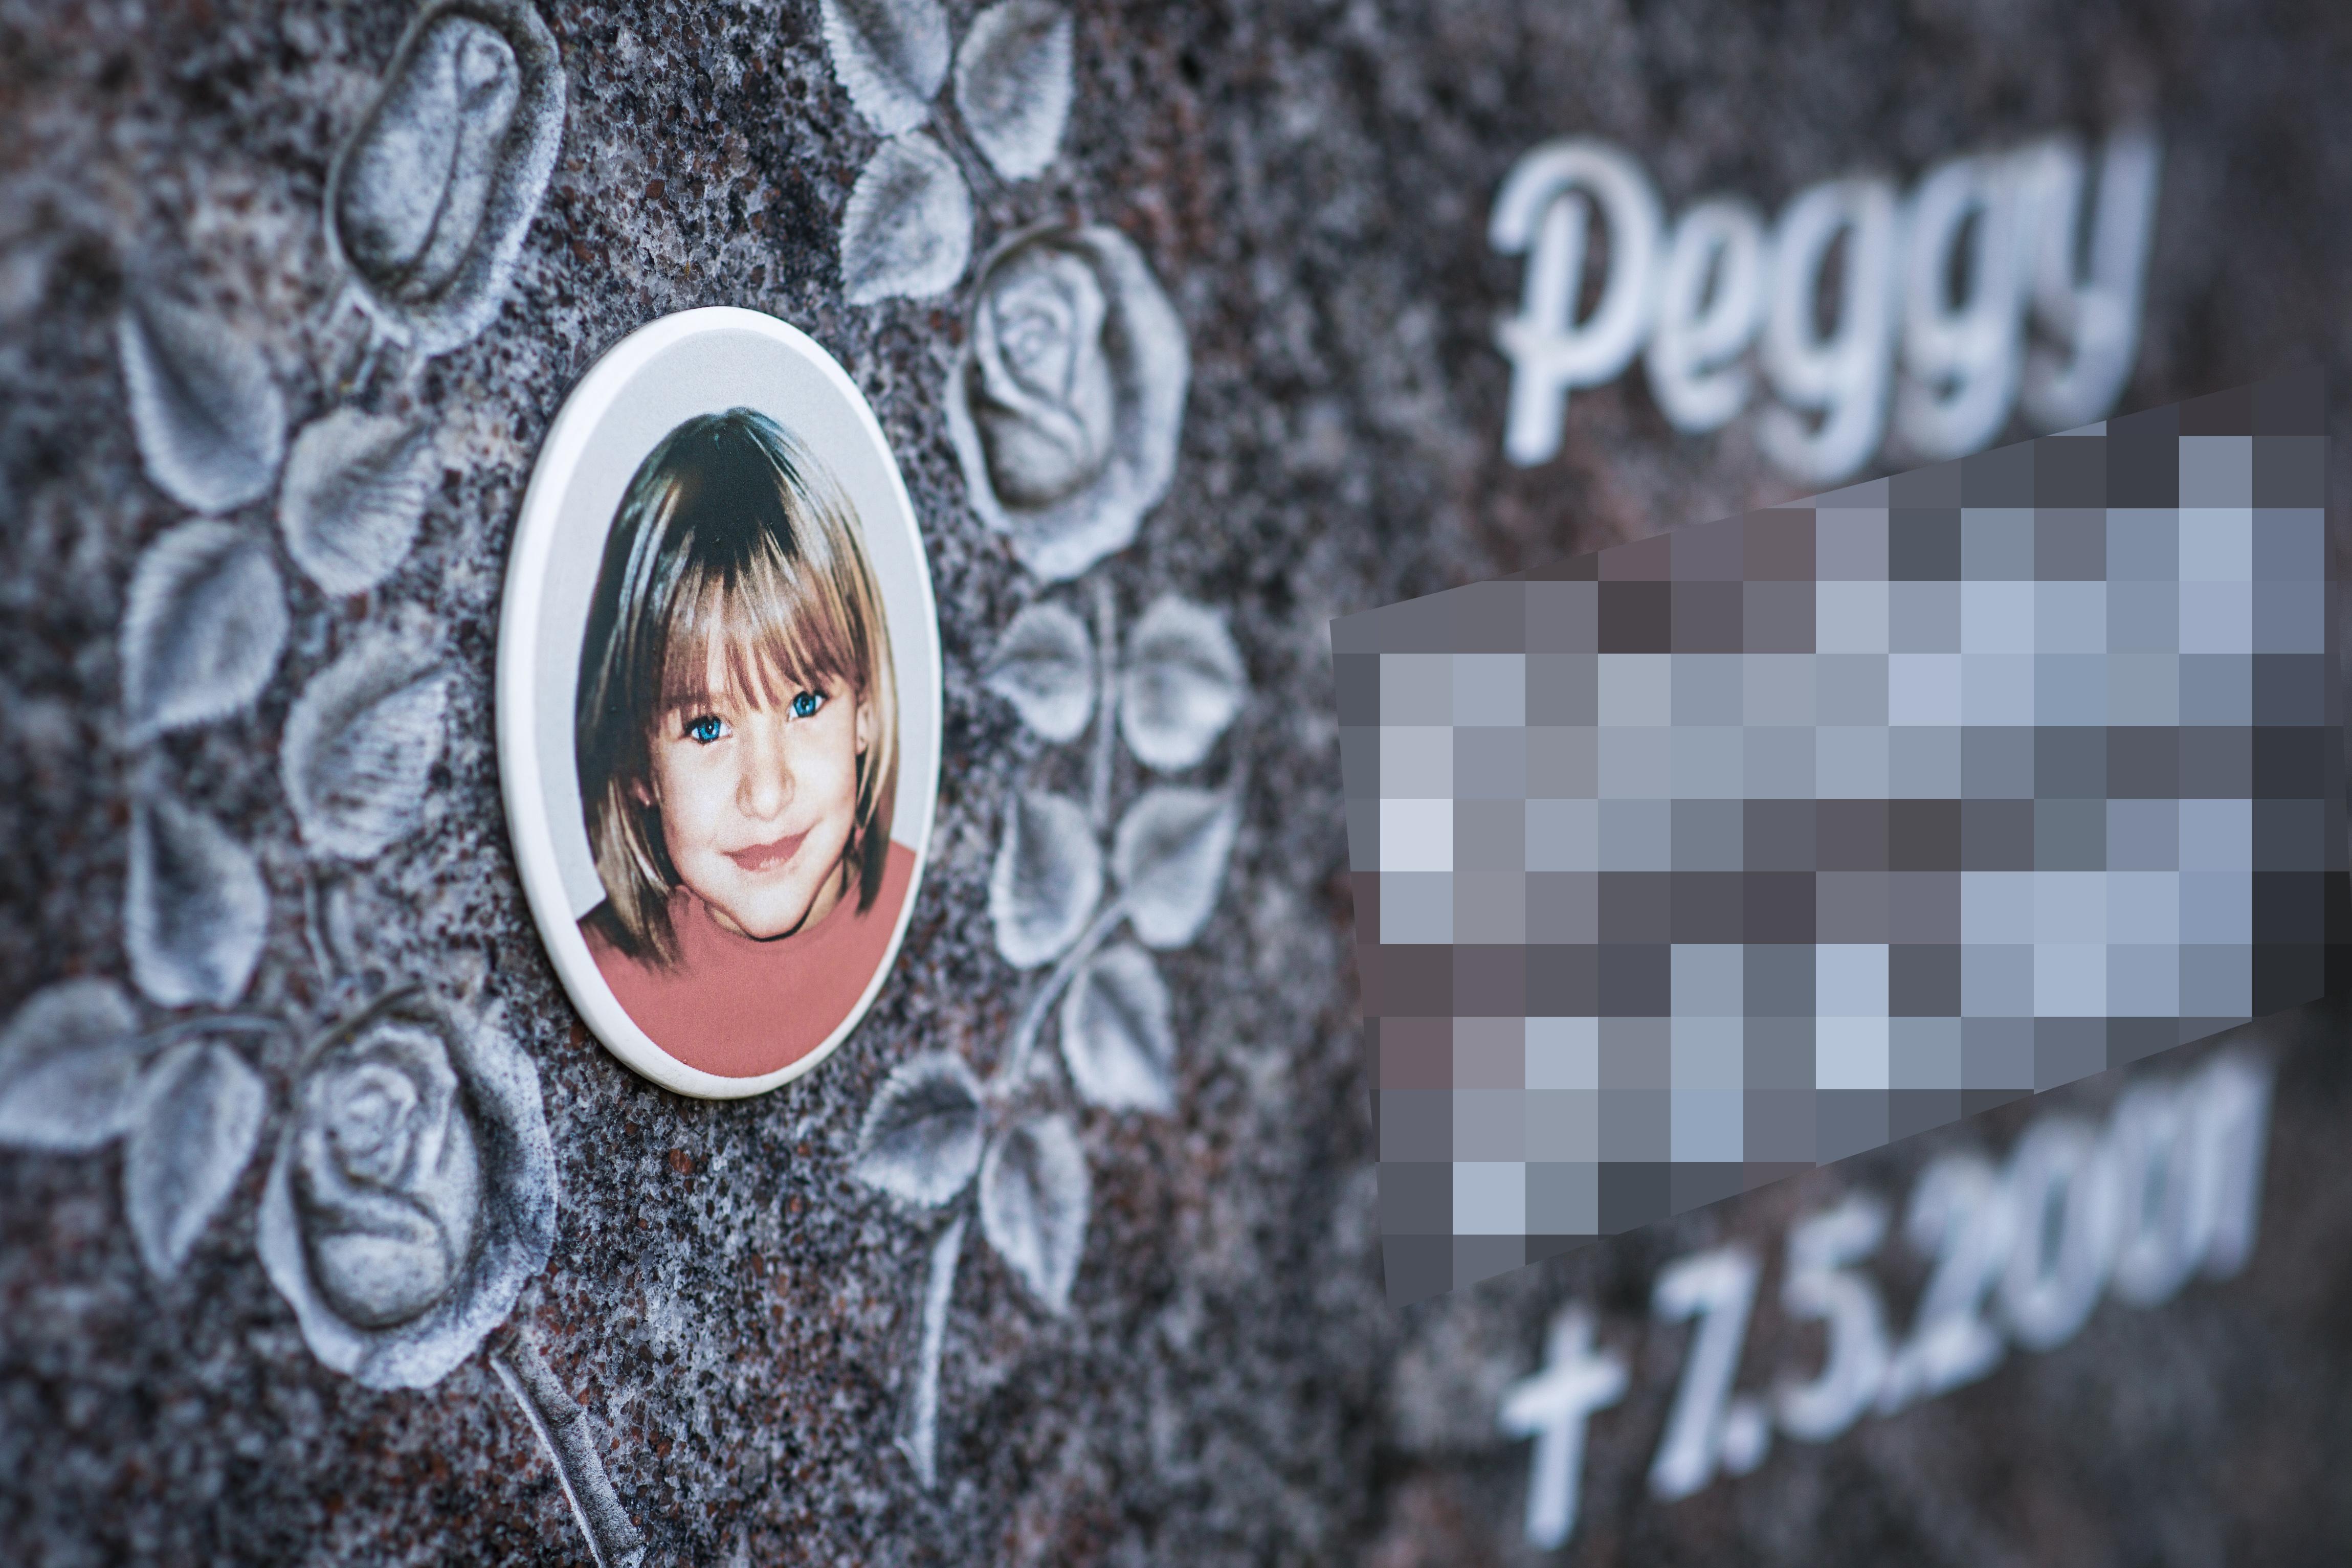 Mordfall Peggy: Mutter fordert Schmerzensgeld 